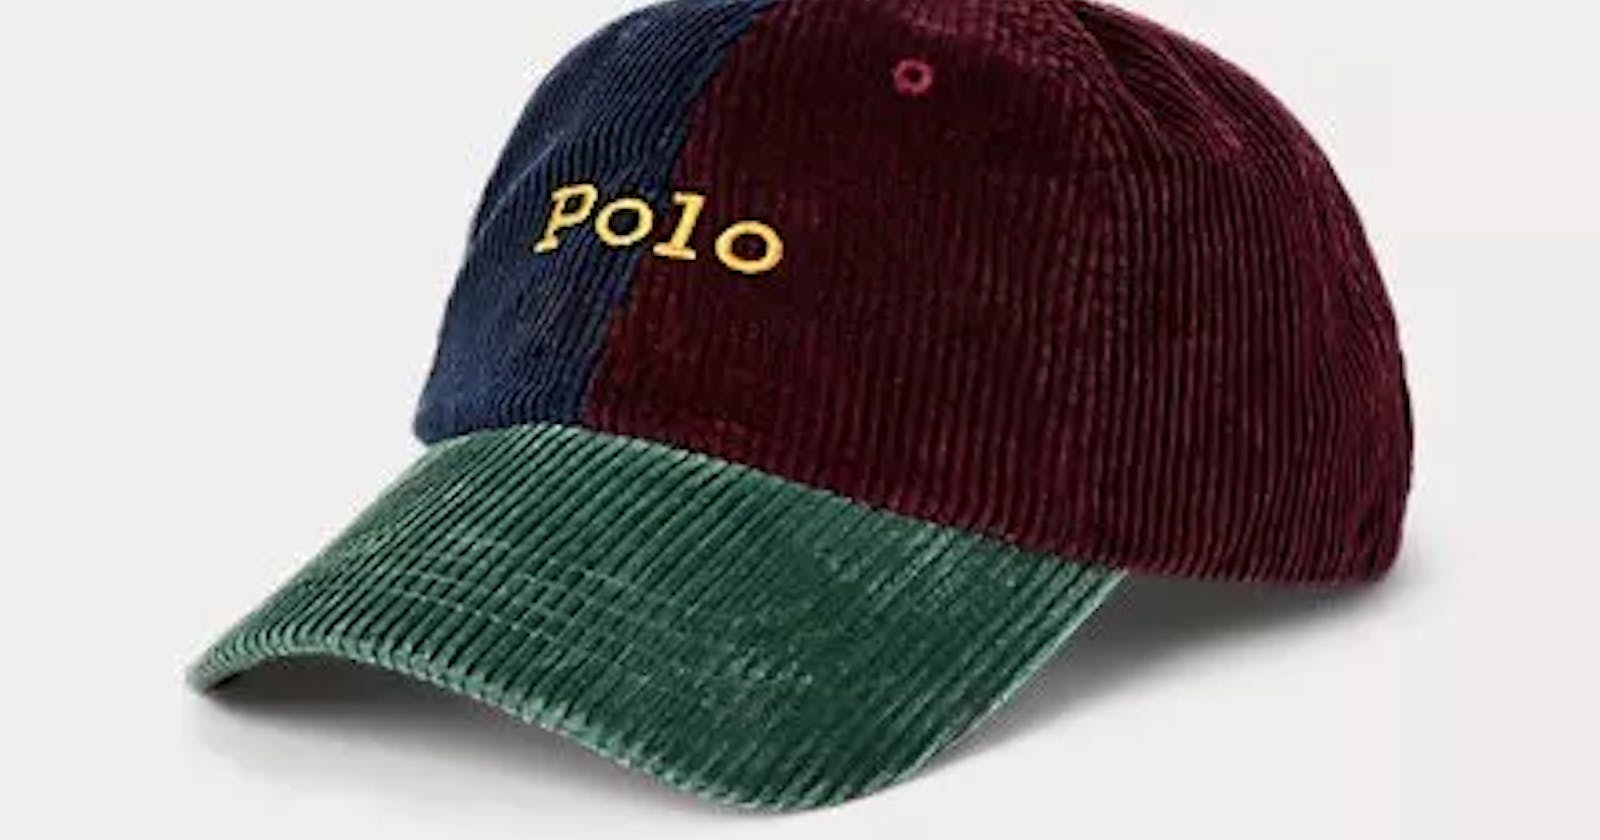 Gebyar123 Store Topi Polo Cap Colour Terbaik